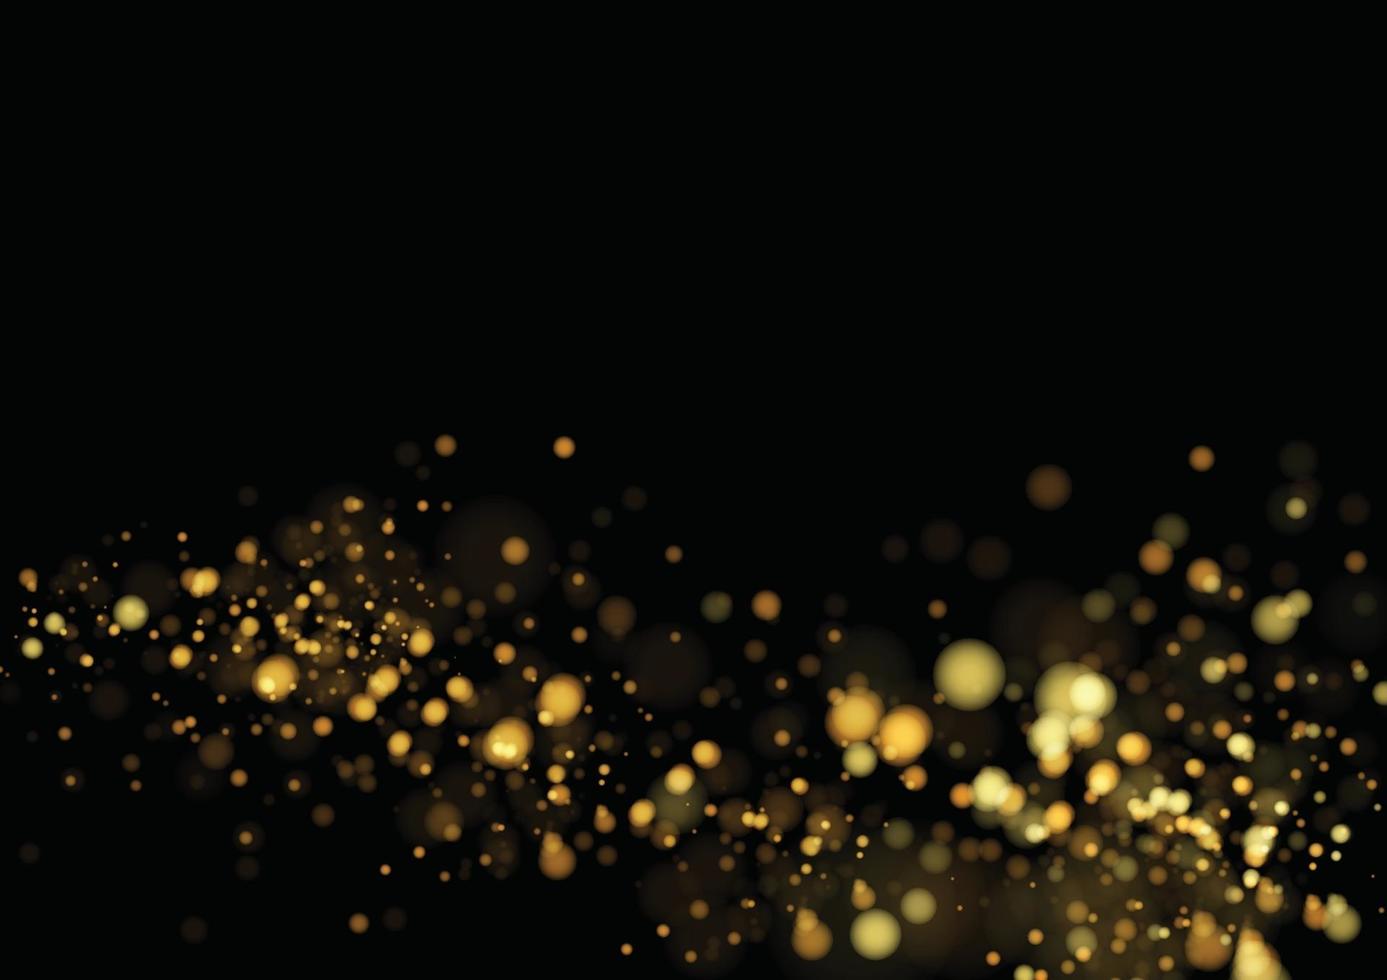 Goldglittertextur lokalisiert mit Bokeh auf schwarzem Hintergrund. Partikel Farbe feierlich. goldene Explosion von Konfetti-Design. Vektorillustration vektor